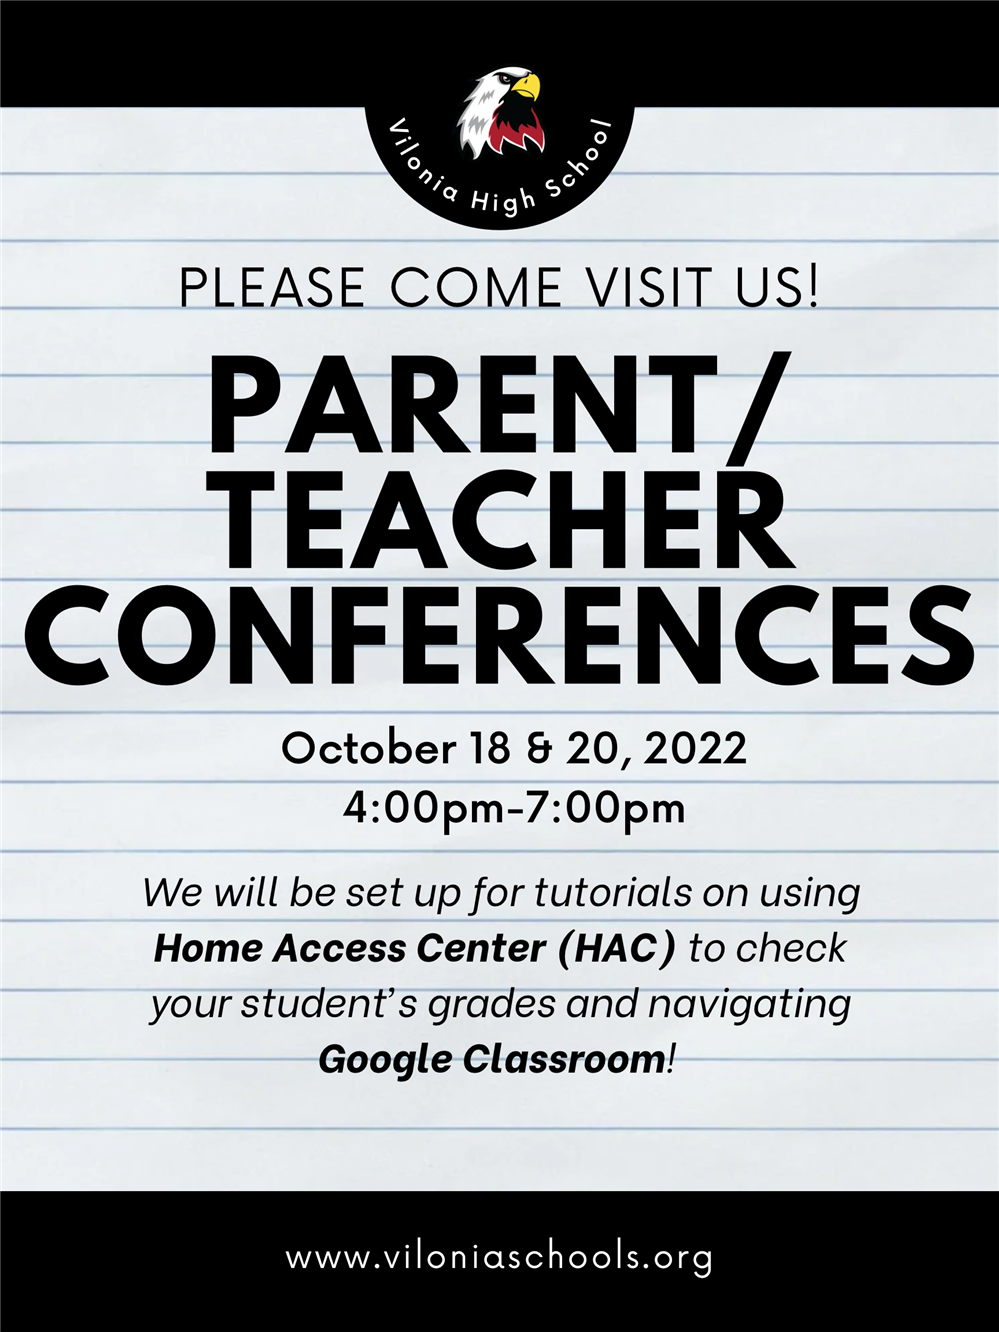  Parent/Teacher Conferences